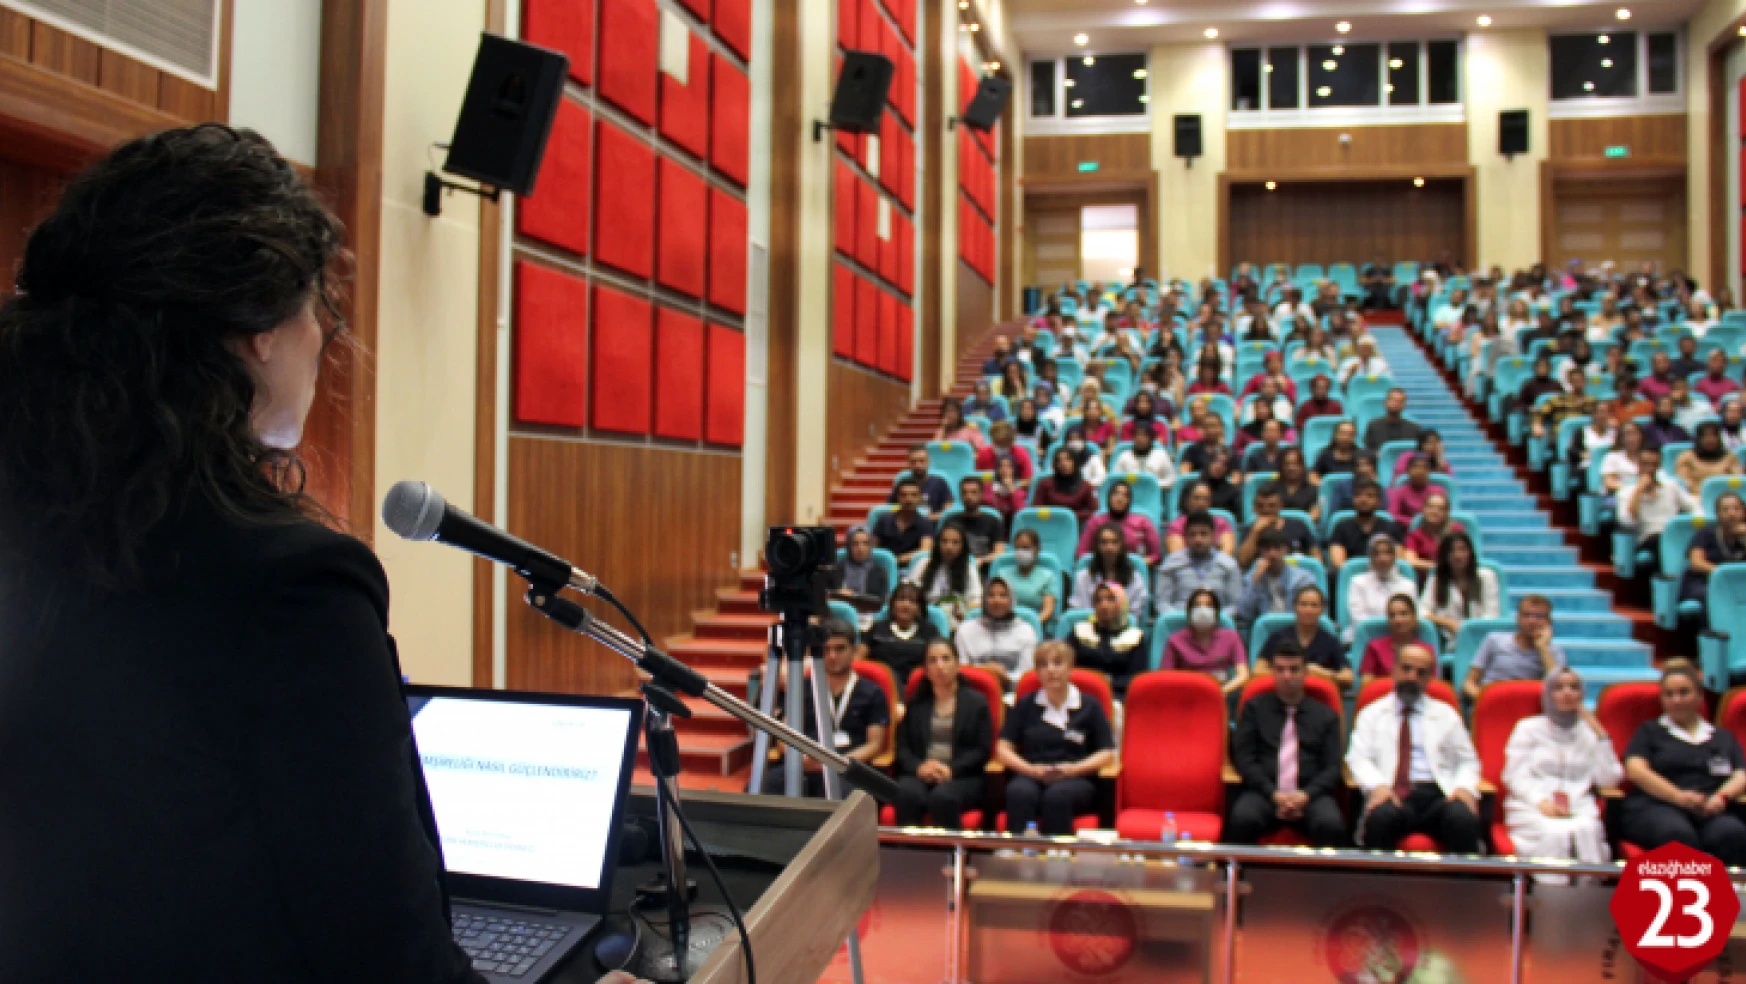 Fırat Üniversitesi Hastanesinde, Hemşirelikte Güçlendirme Konulu Bir Konferans Verildi